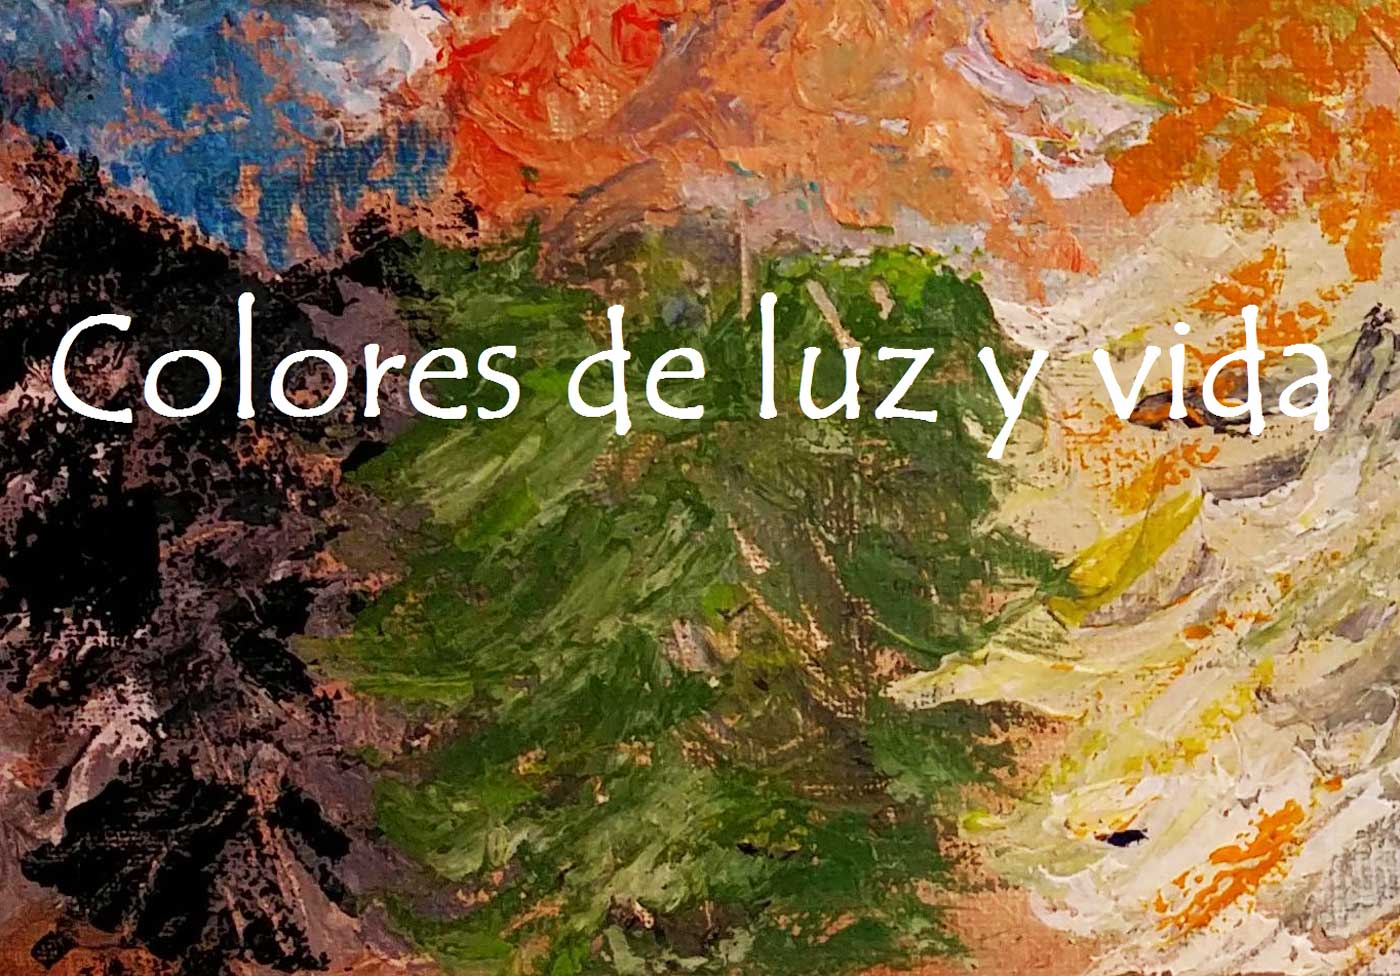 Expo Jose Ramón Ballesteros-Colores de luz y vida